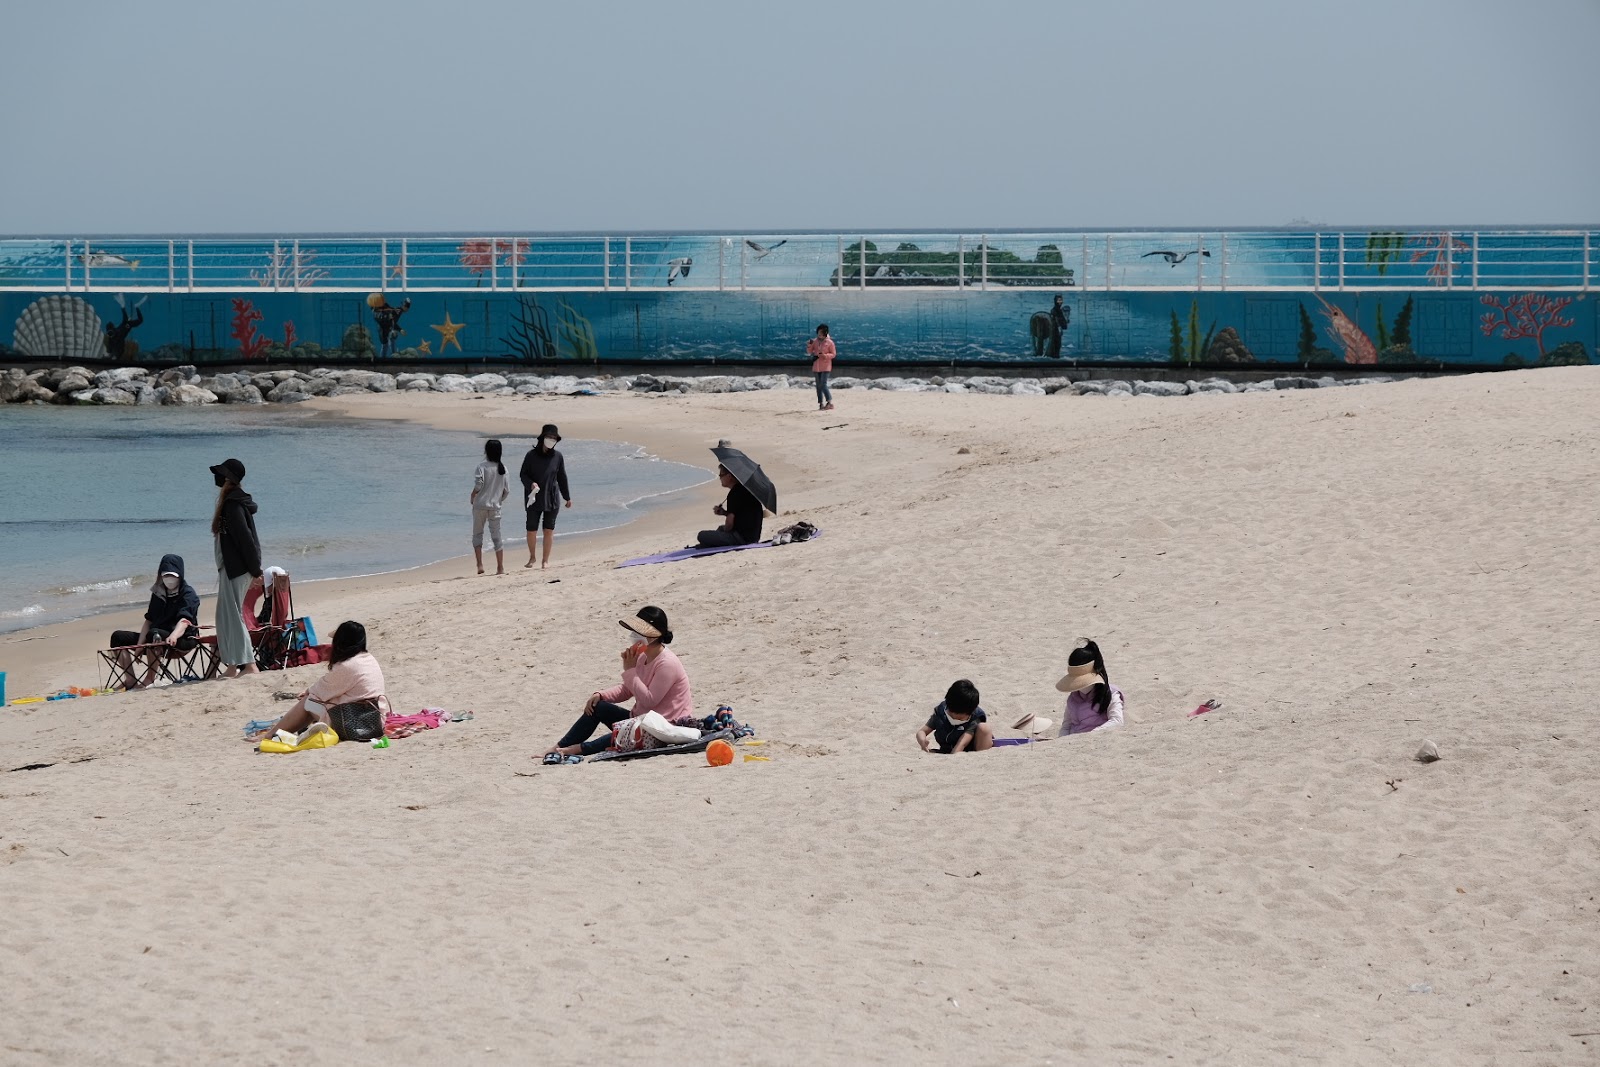 Yeongjin Beach'in fotoğrafı - rahatlamayı sevenler arasında popüler bir yer